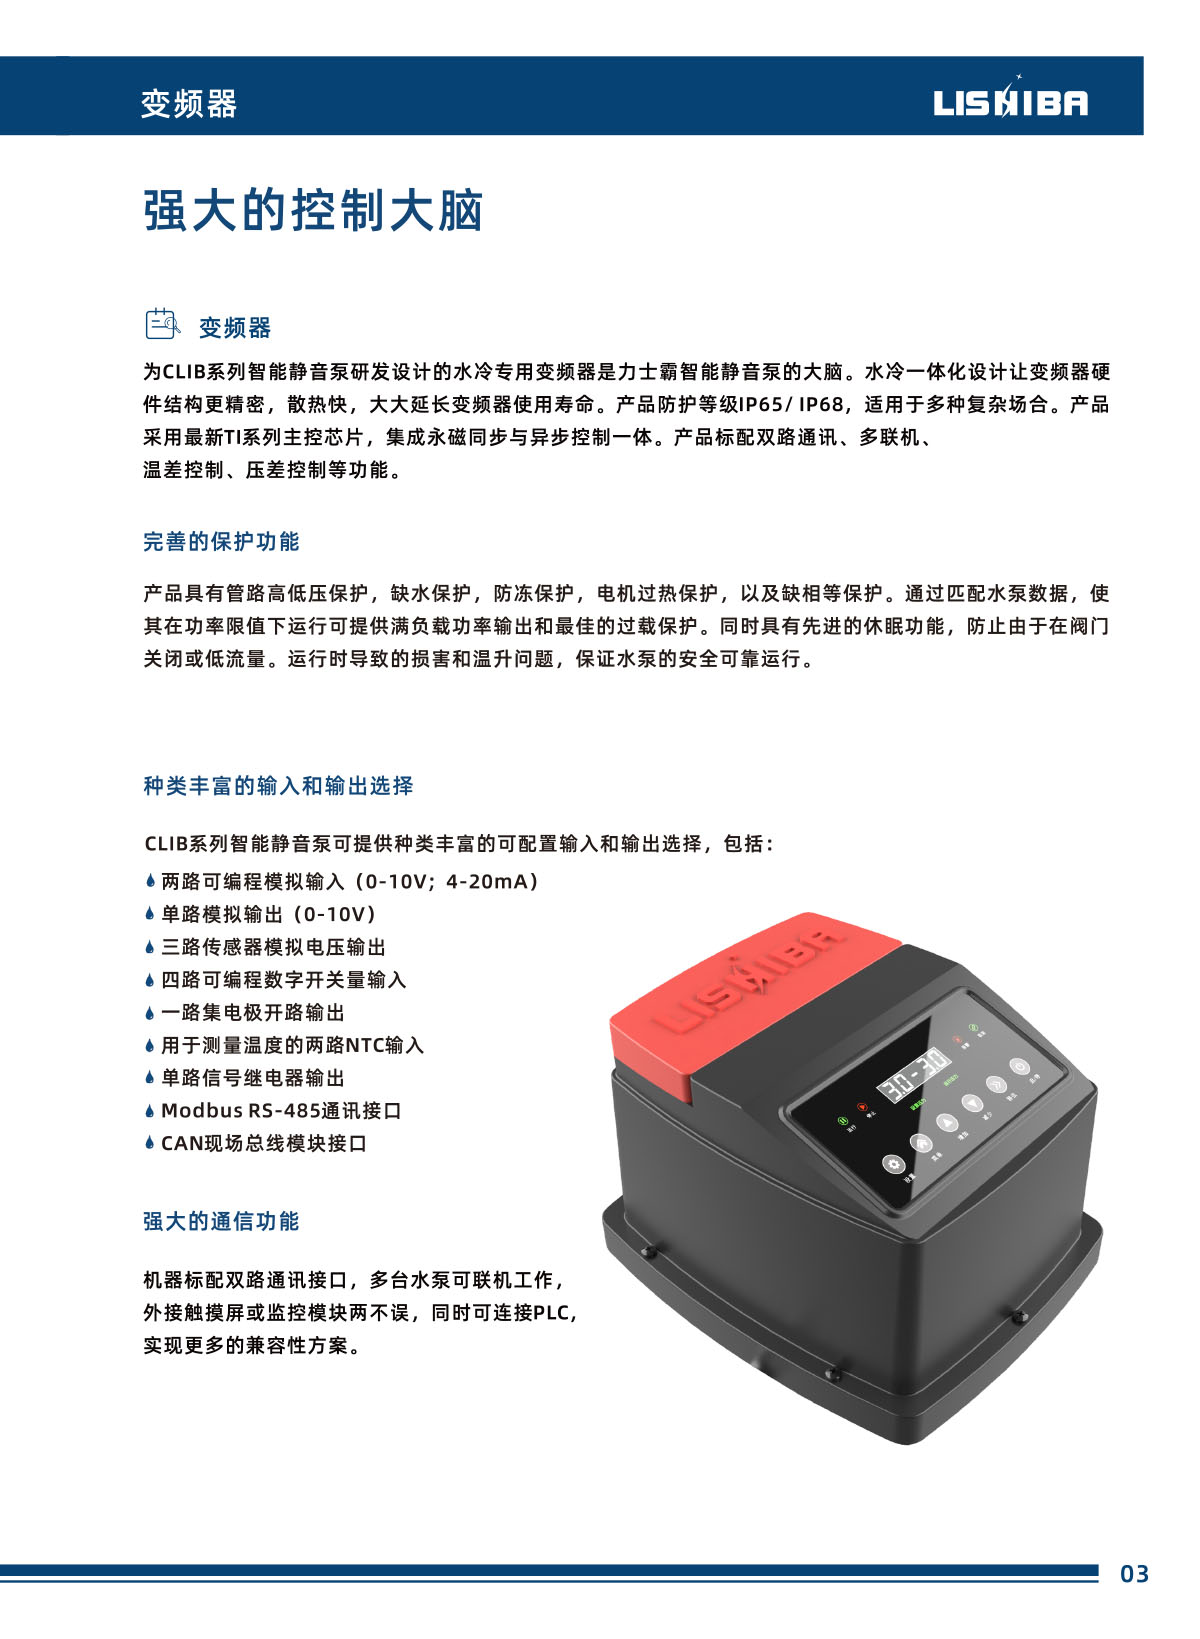 尊龙凯时智能静音泵数据手册(图9)